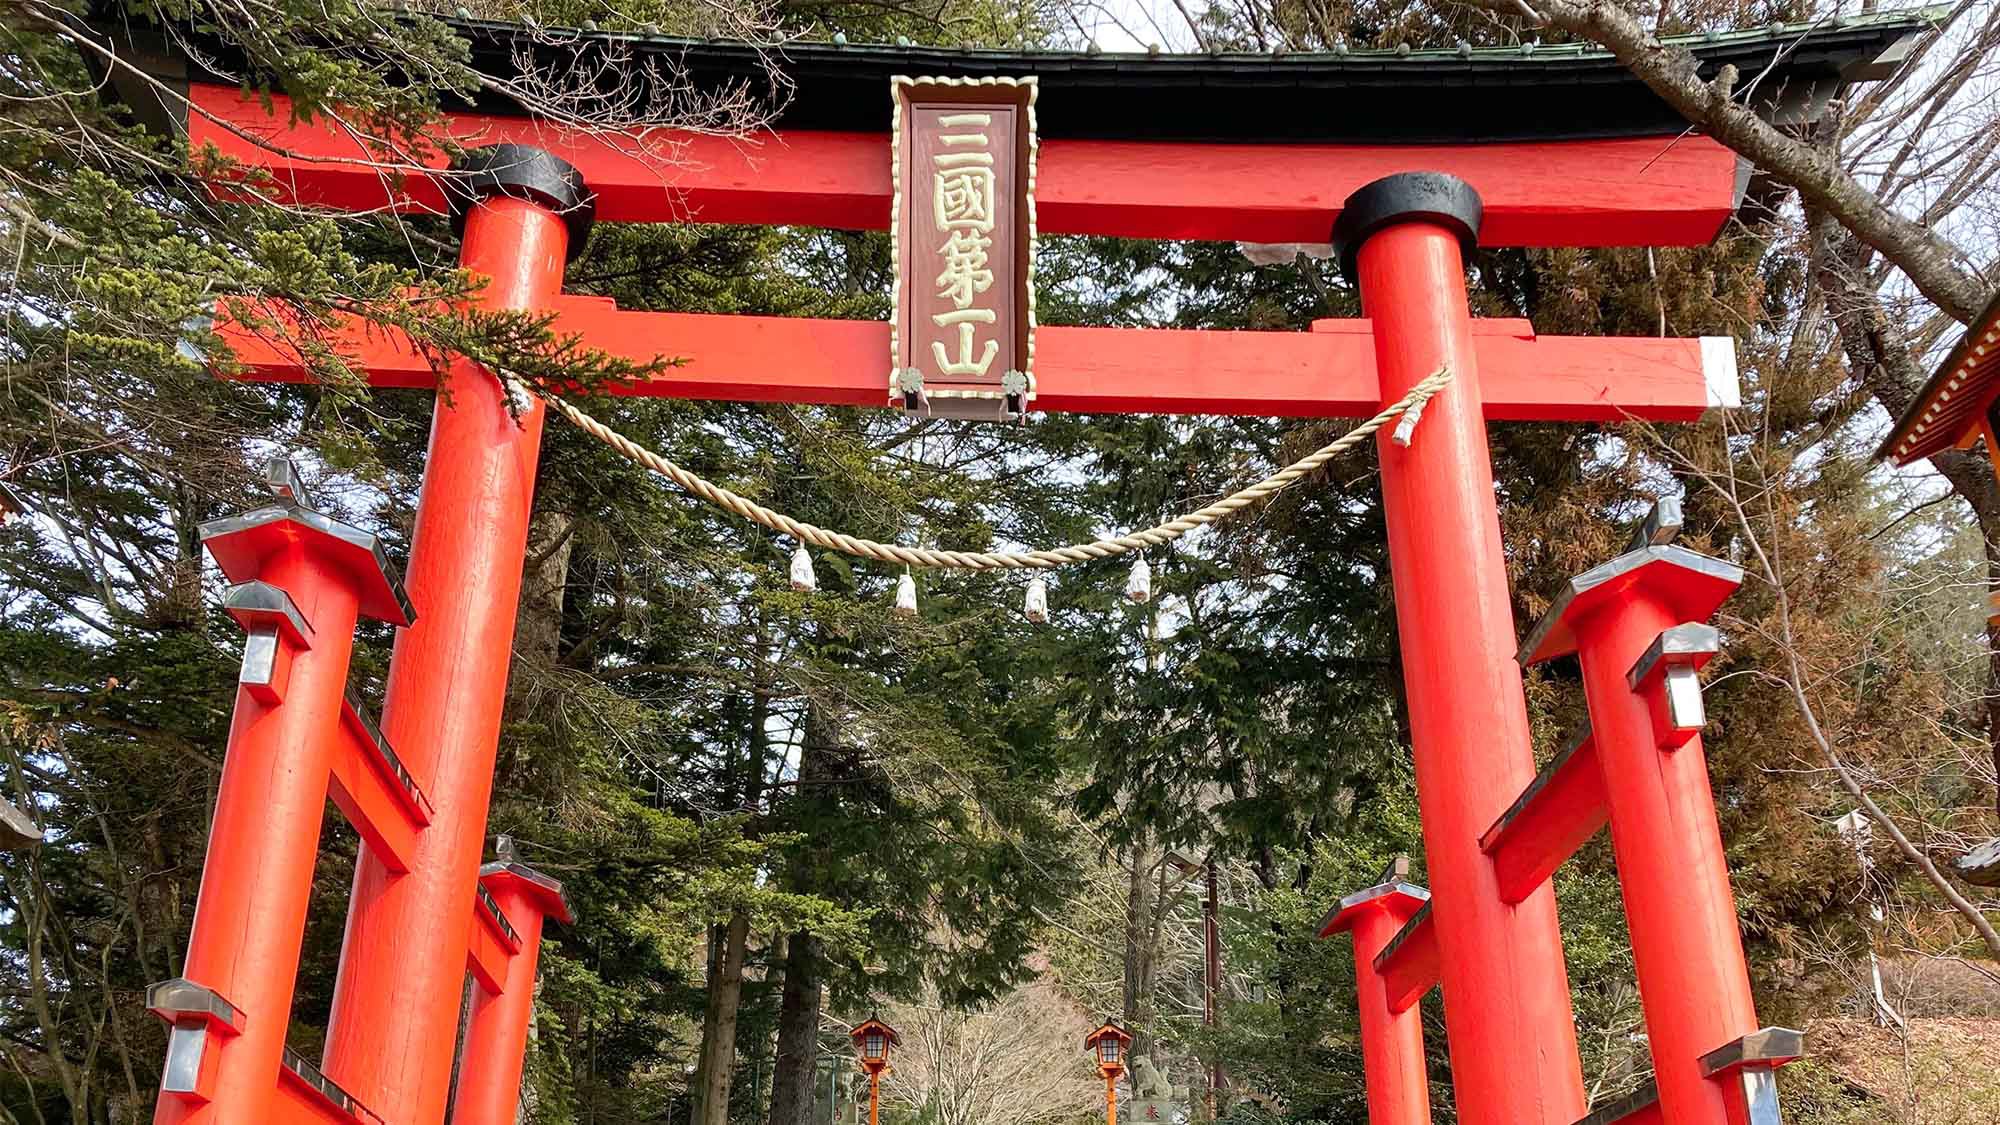 ・森の緑の中に赤が調和良く見える新倉富士浅間神社の大鳥居